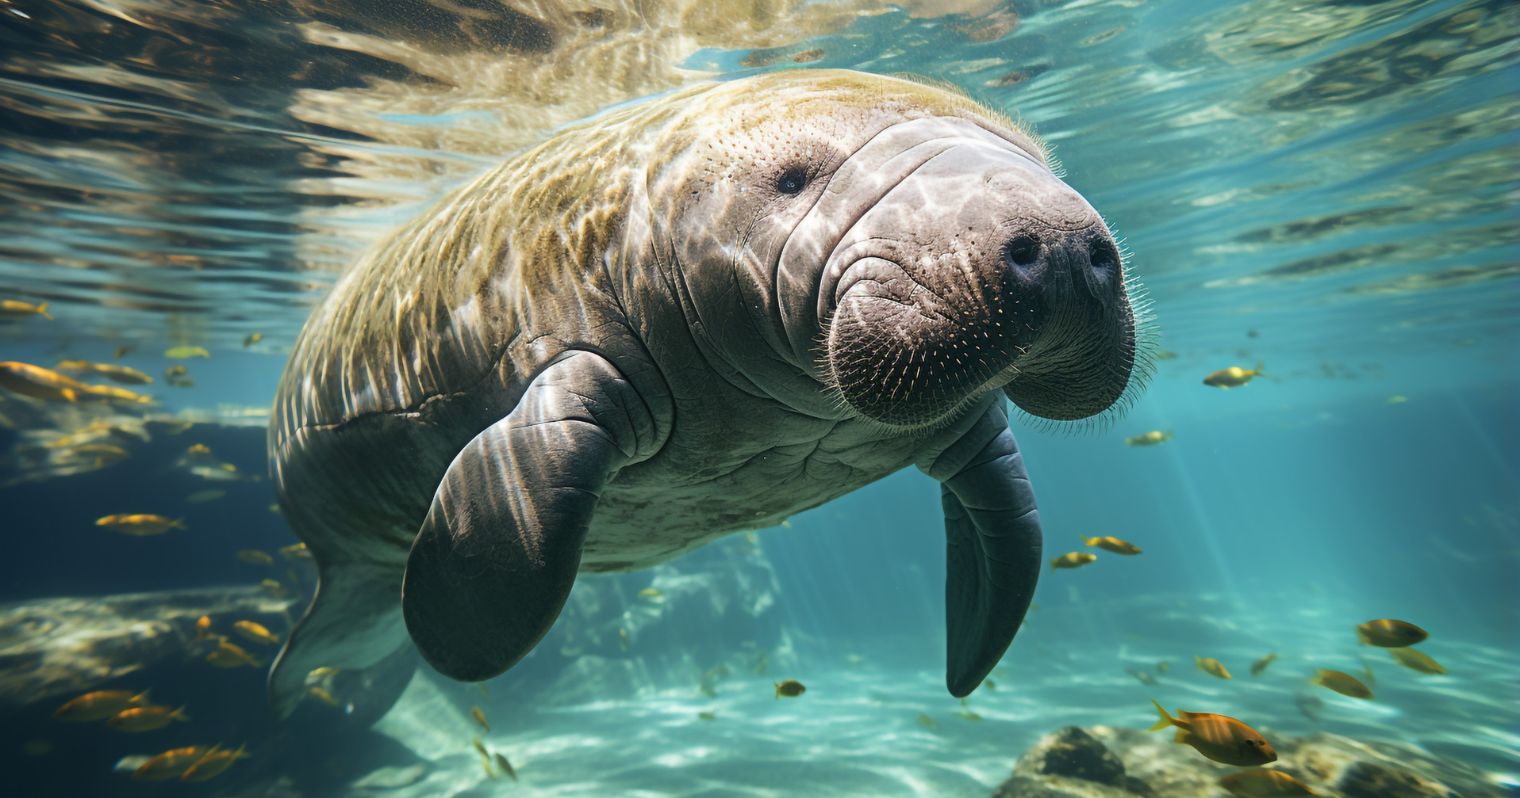 Víz alatt úszik egy uszonyos, turcsi orrú, barátságos kinézetű állat.